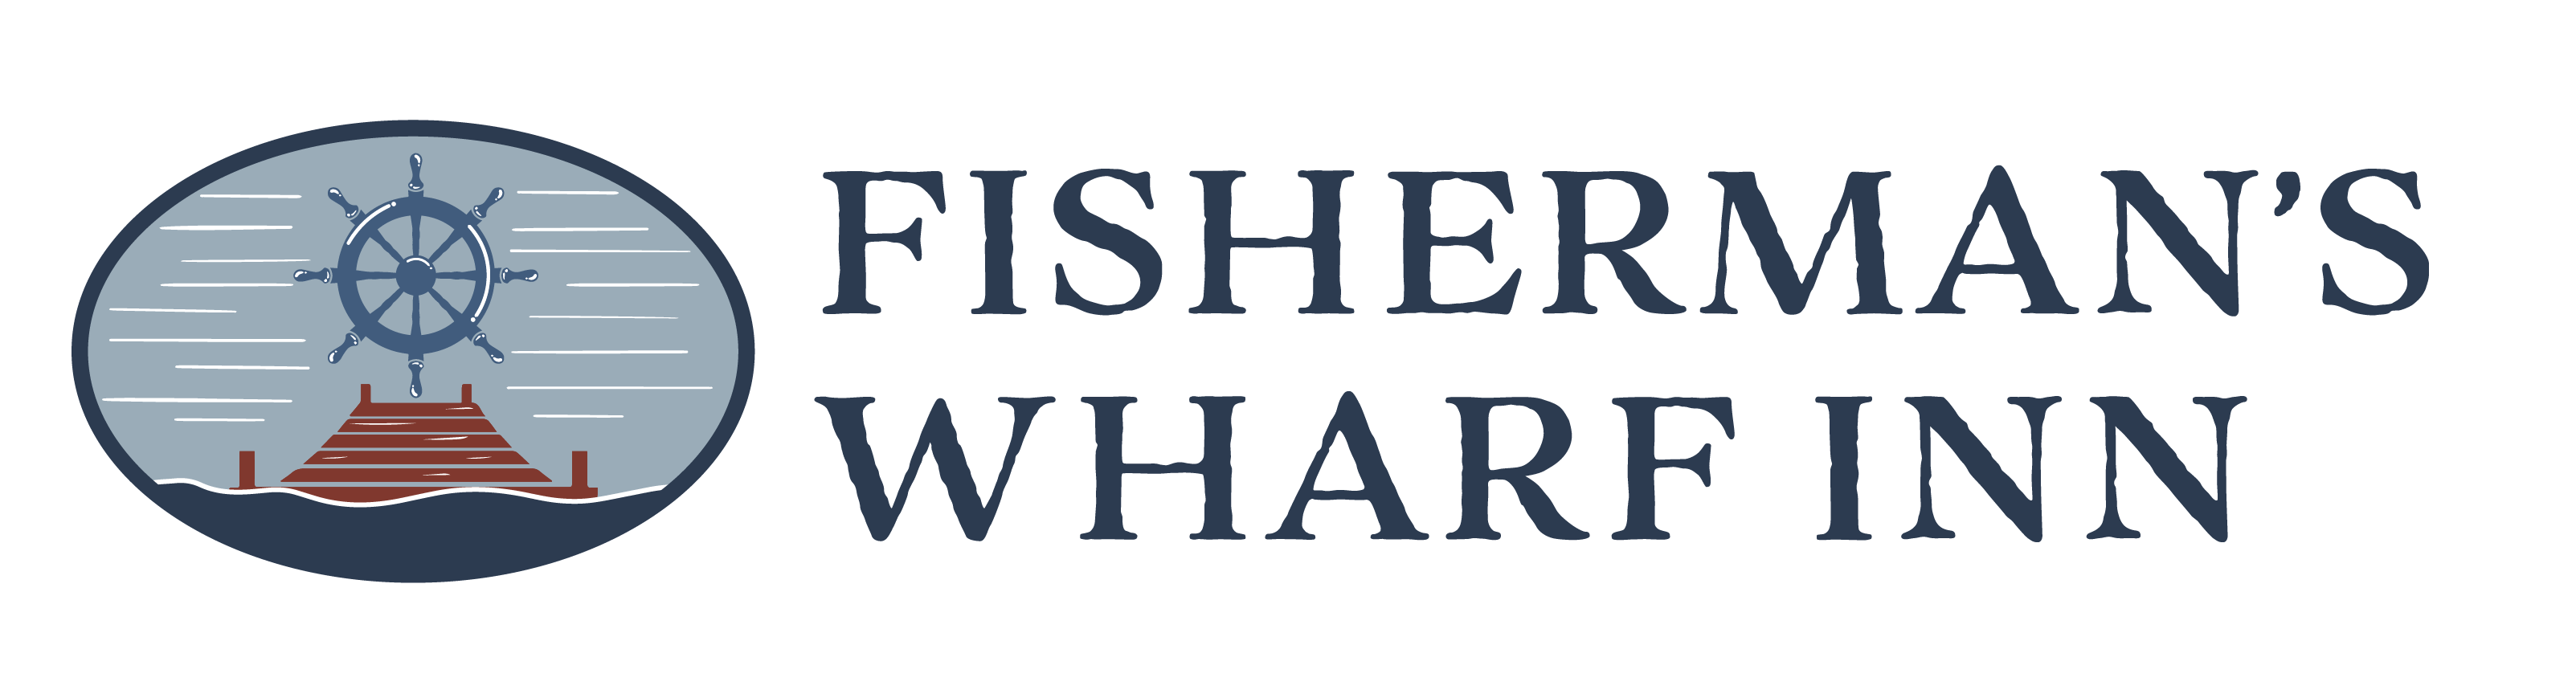 fishermans wharf inn logo full color